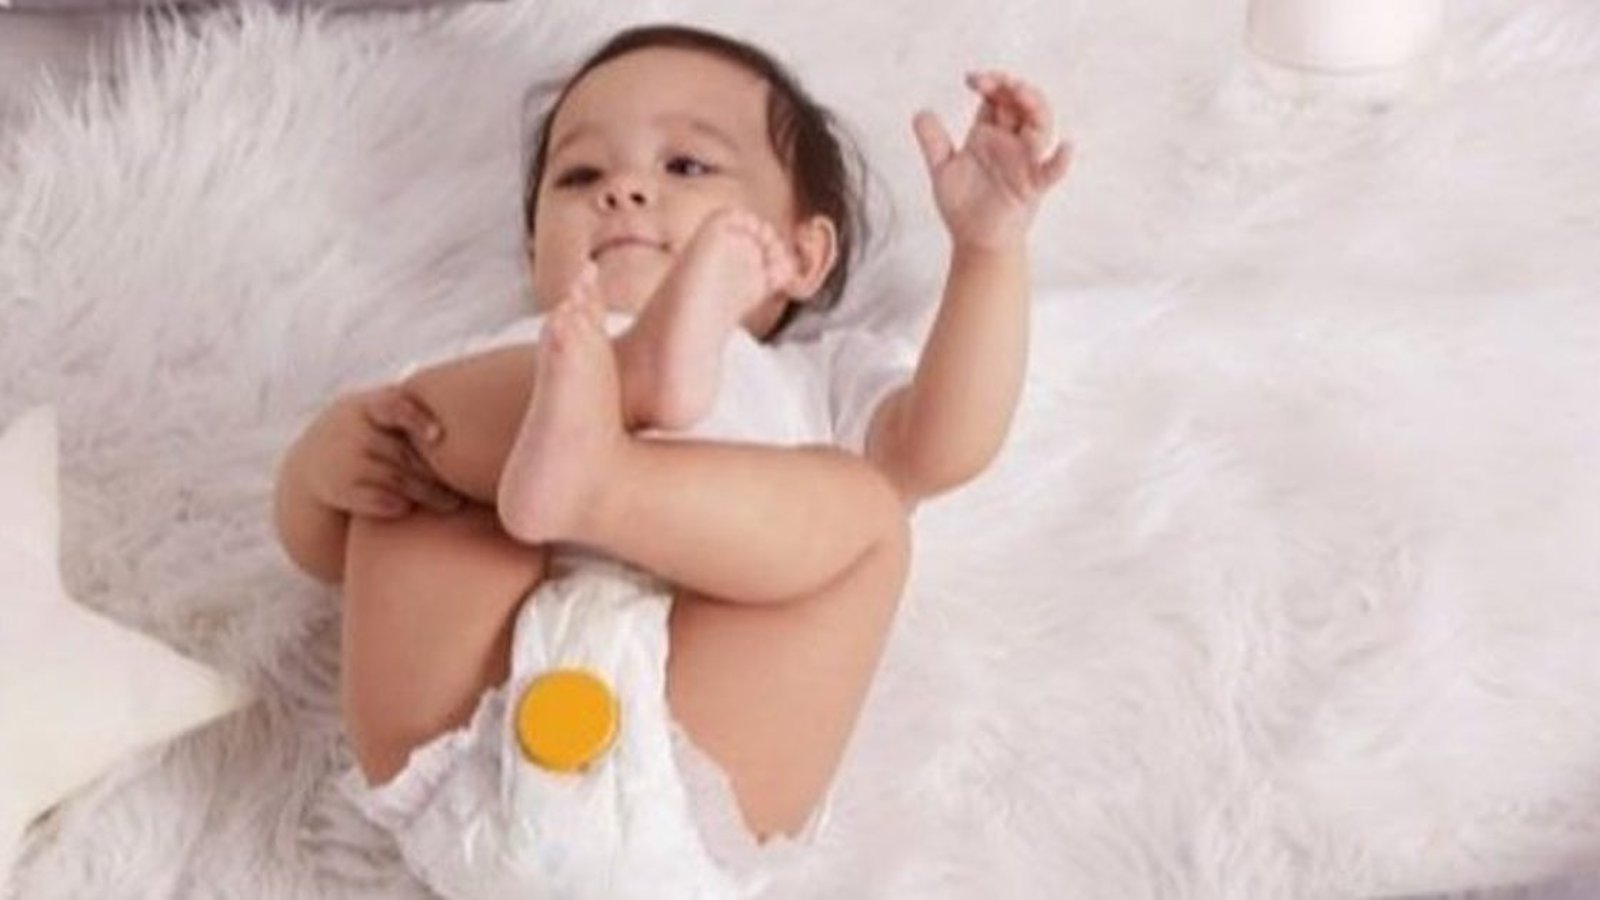 Gadget insolito: un “pannolino intelligente” che avvisa il tuo cellulare quando è necessario cambiare il bambino